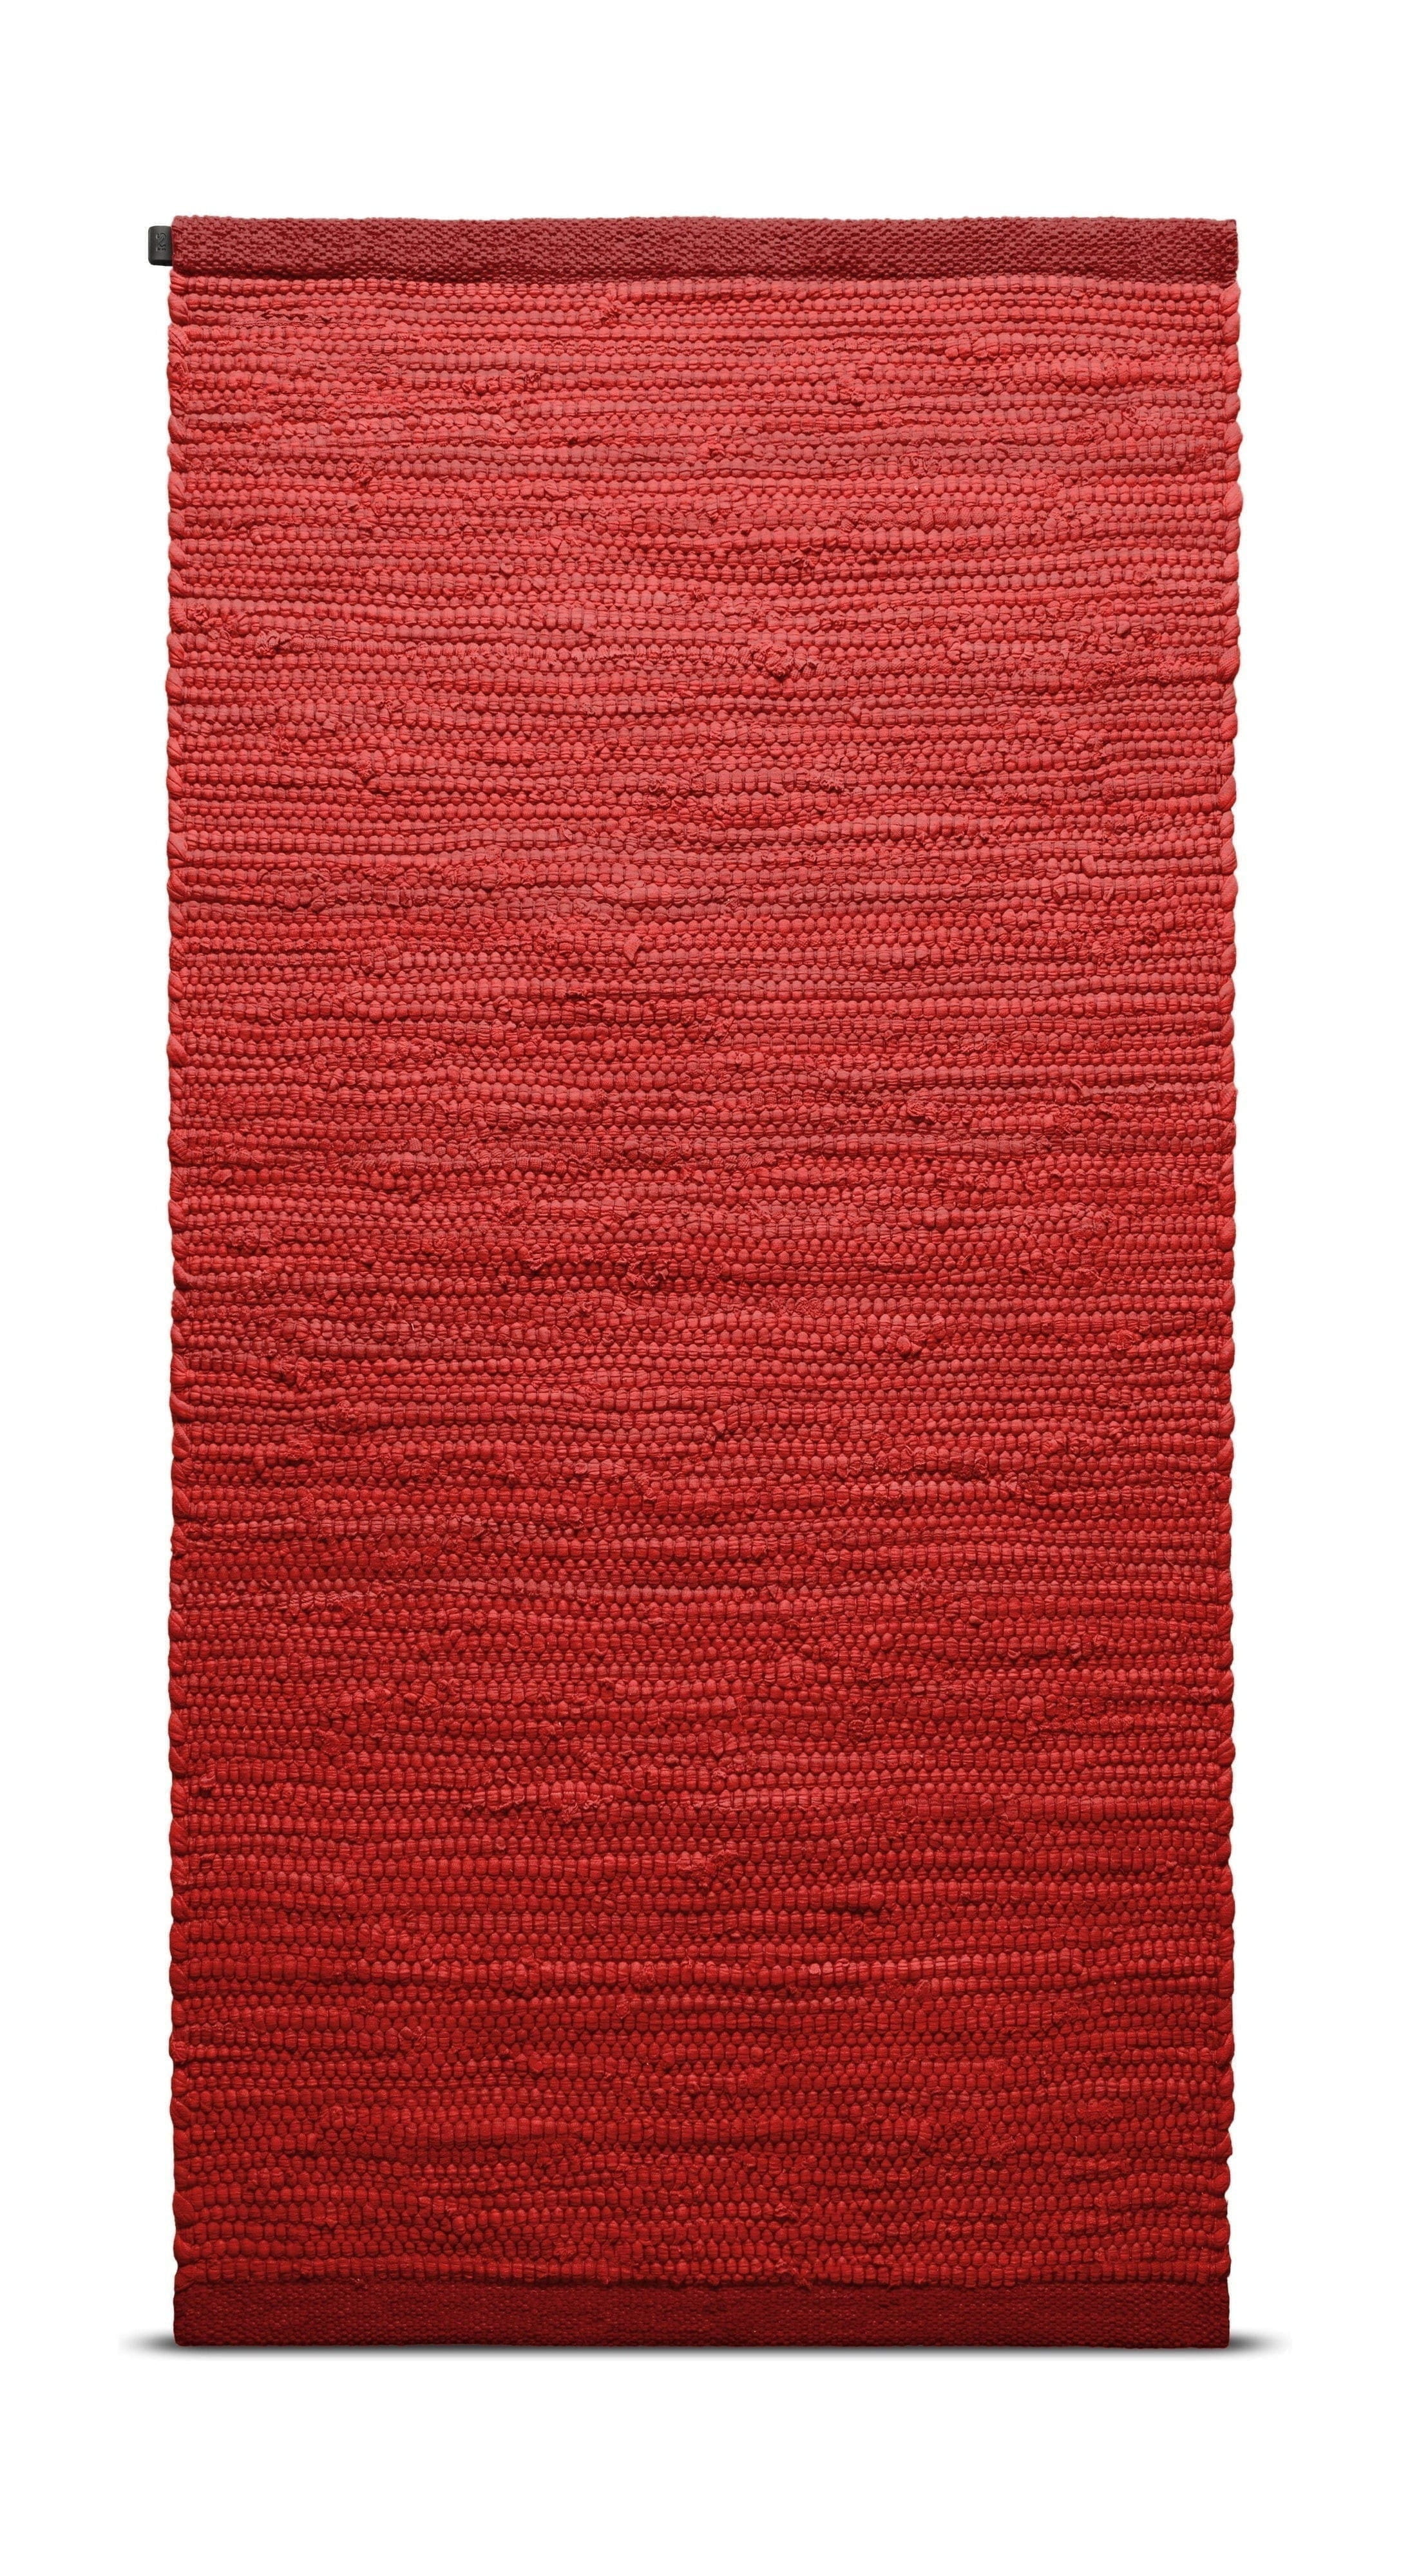 Rug Solid Katoenen tapijt 170 x 240 cm, aardbei